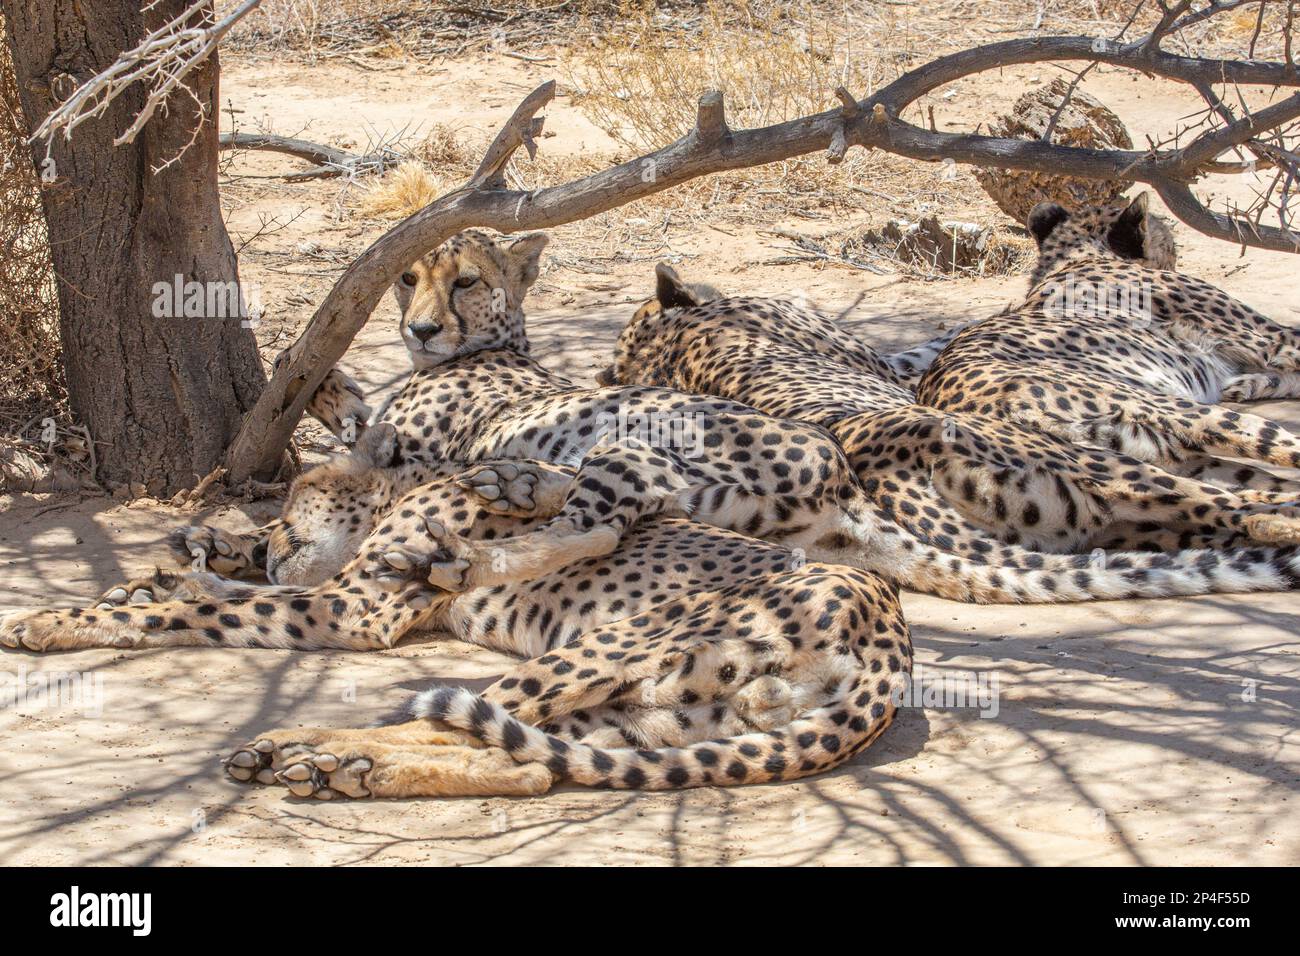 Cheetahs under a tree Stock Photo